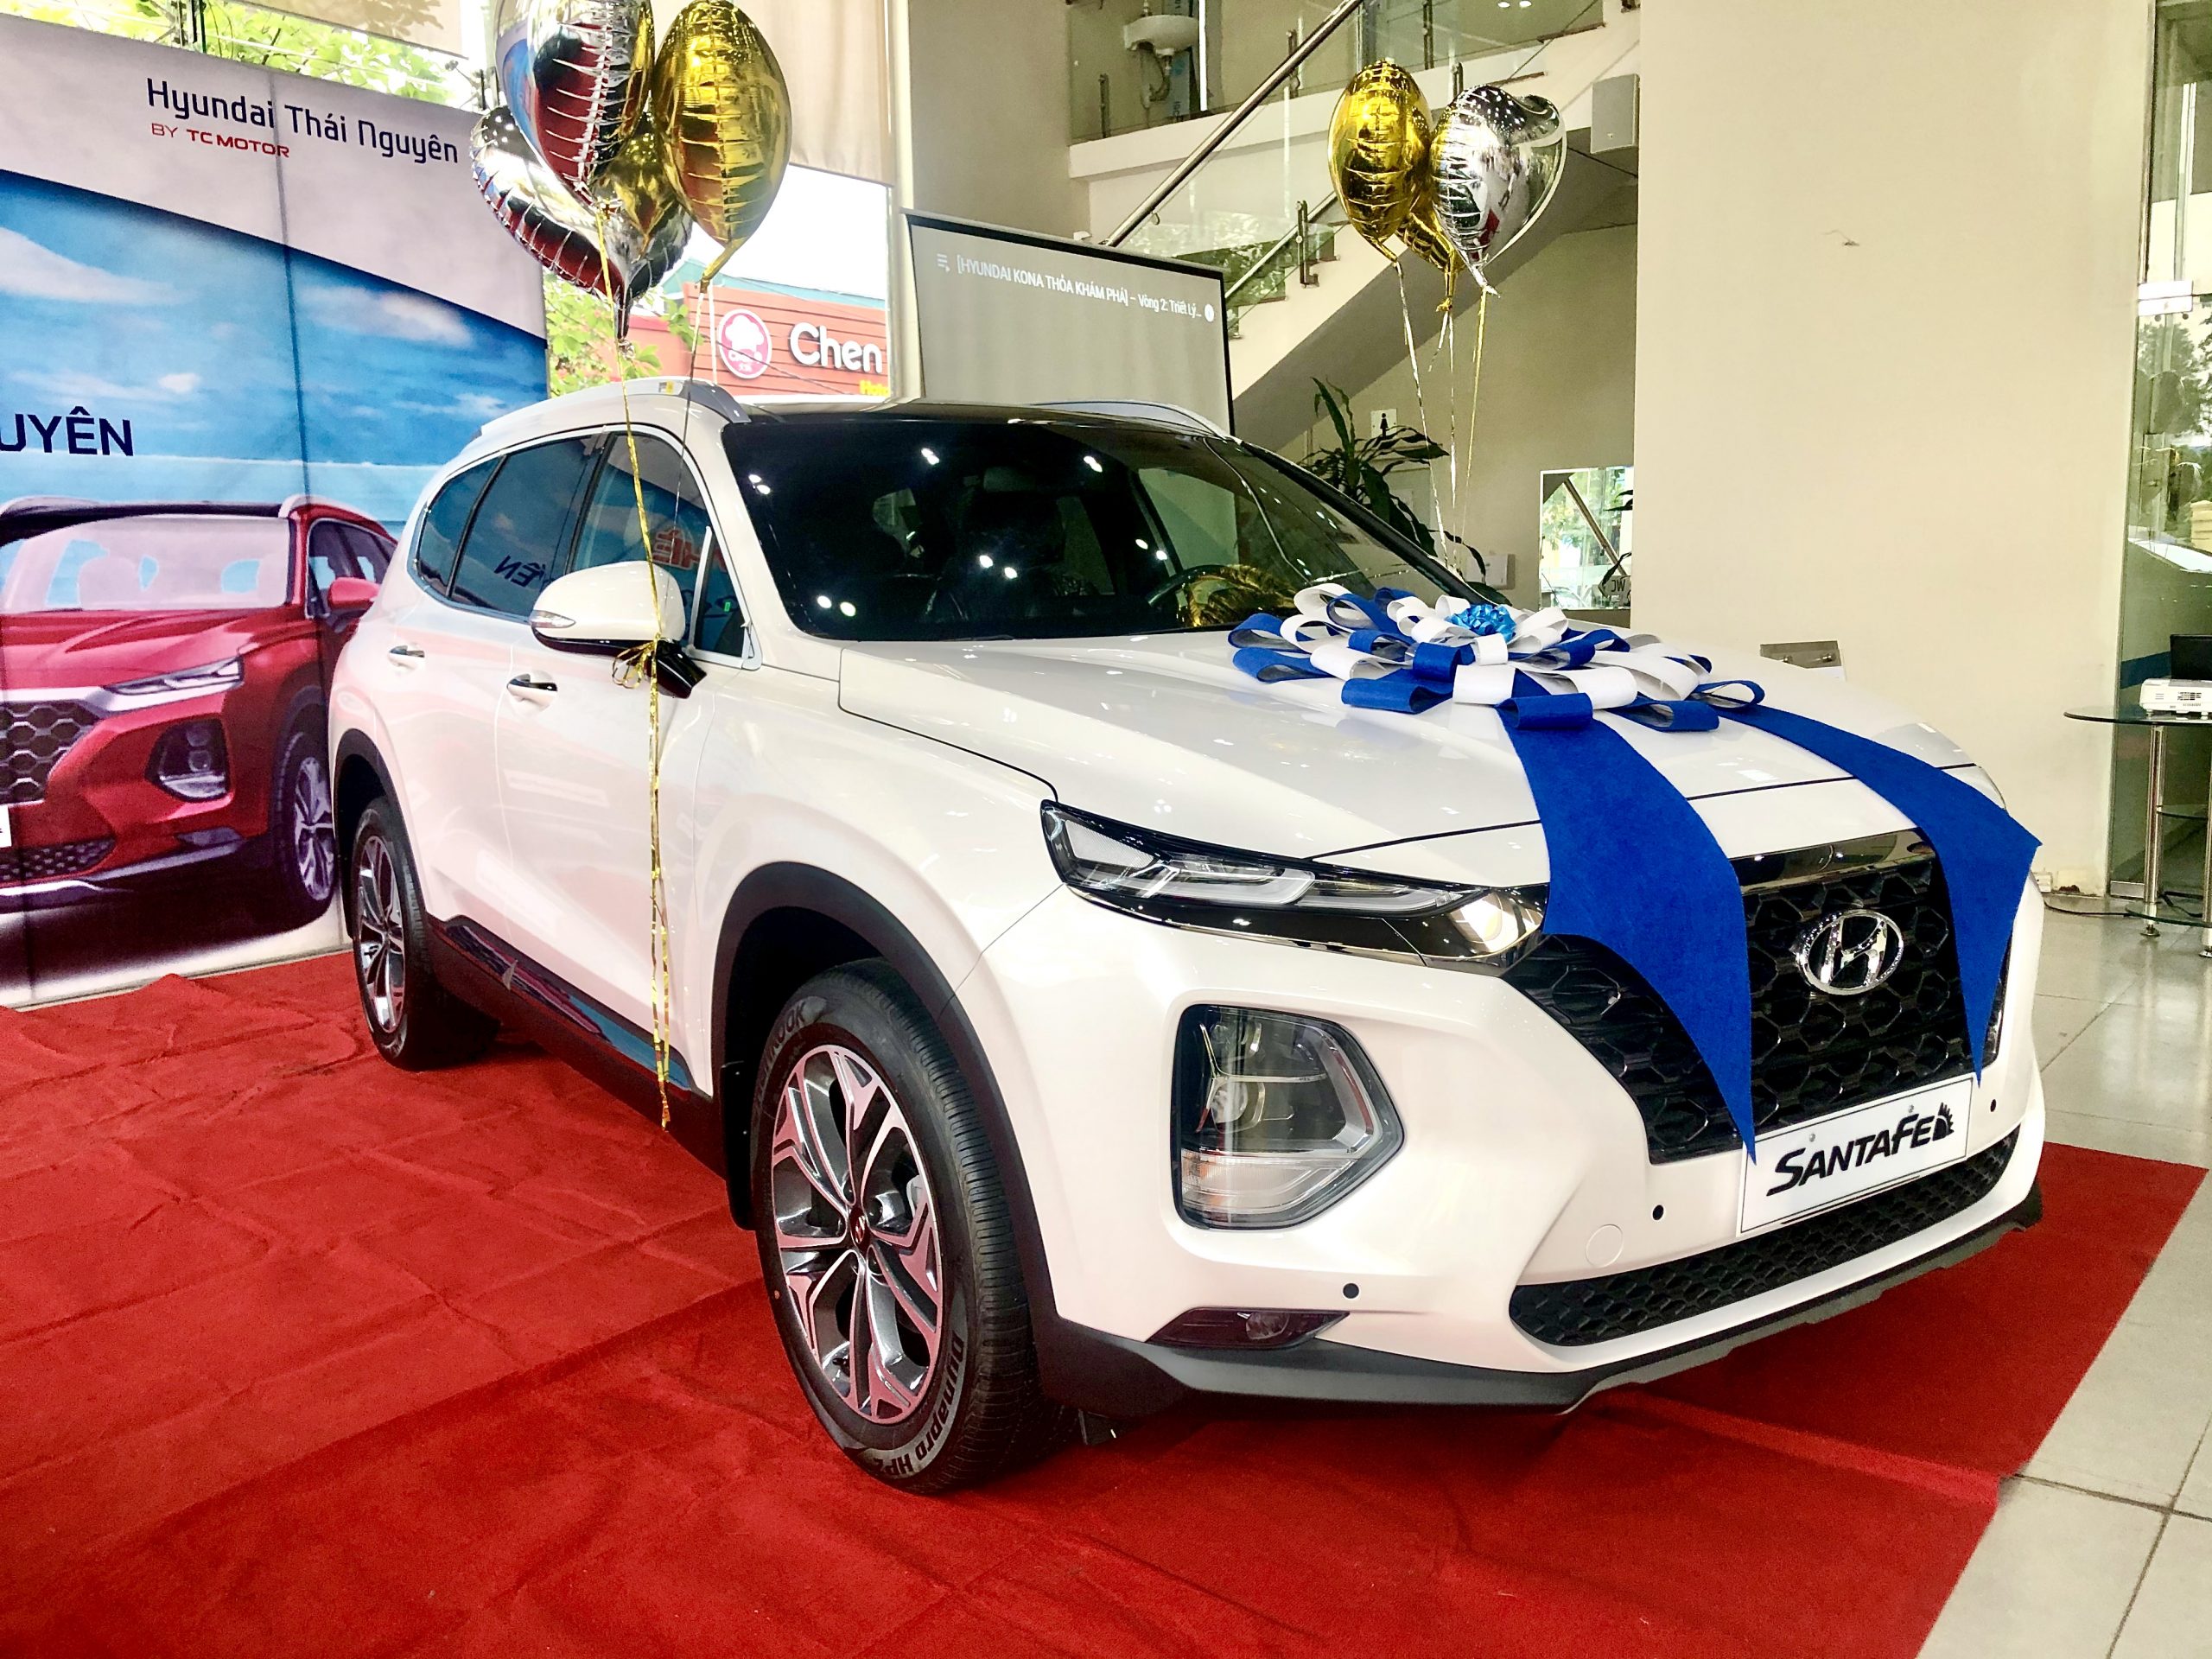 Hyundai Thái Nguyên đã tổ chức thành công chương trình lái thử chào hè